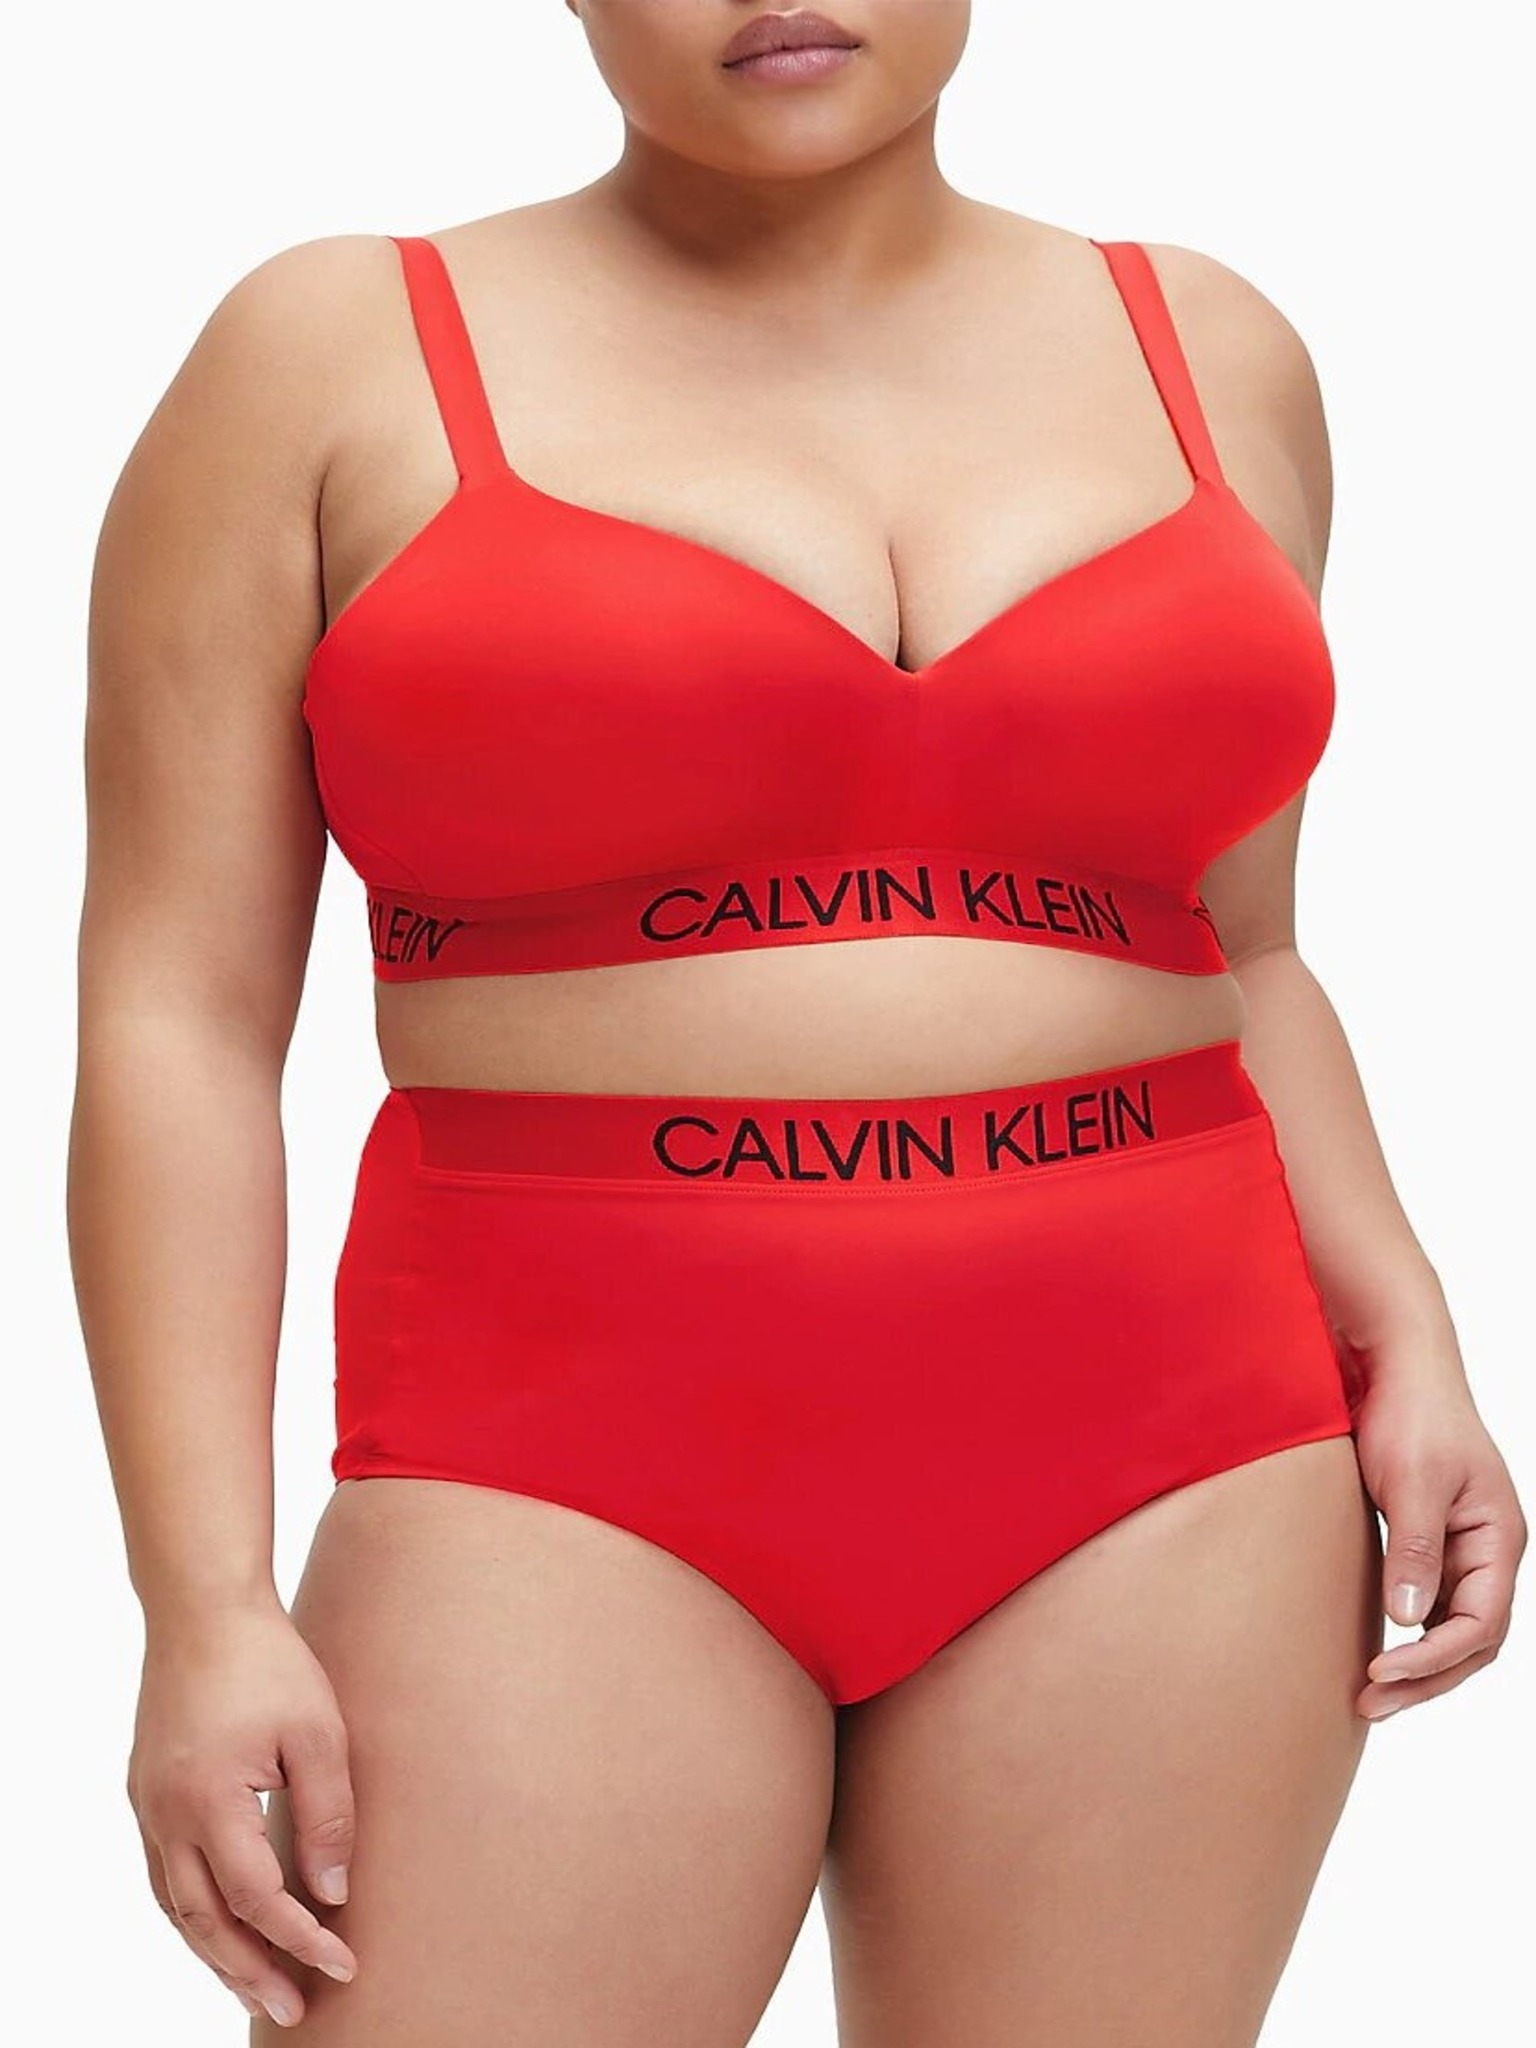 Women's Bras Calvin Klein Red Lingerie